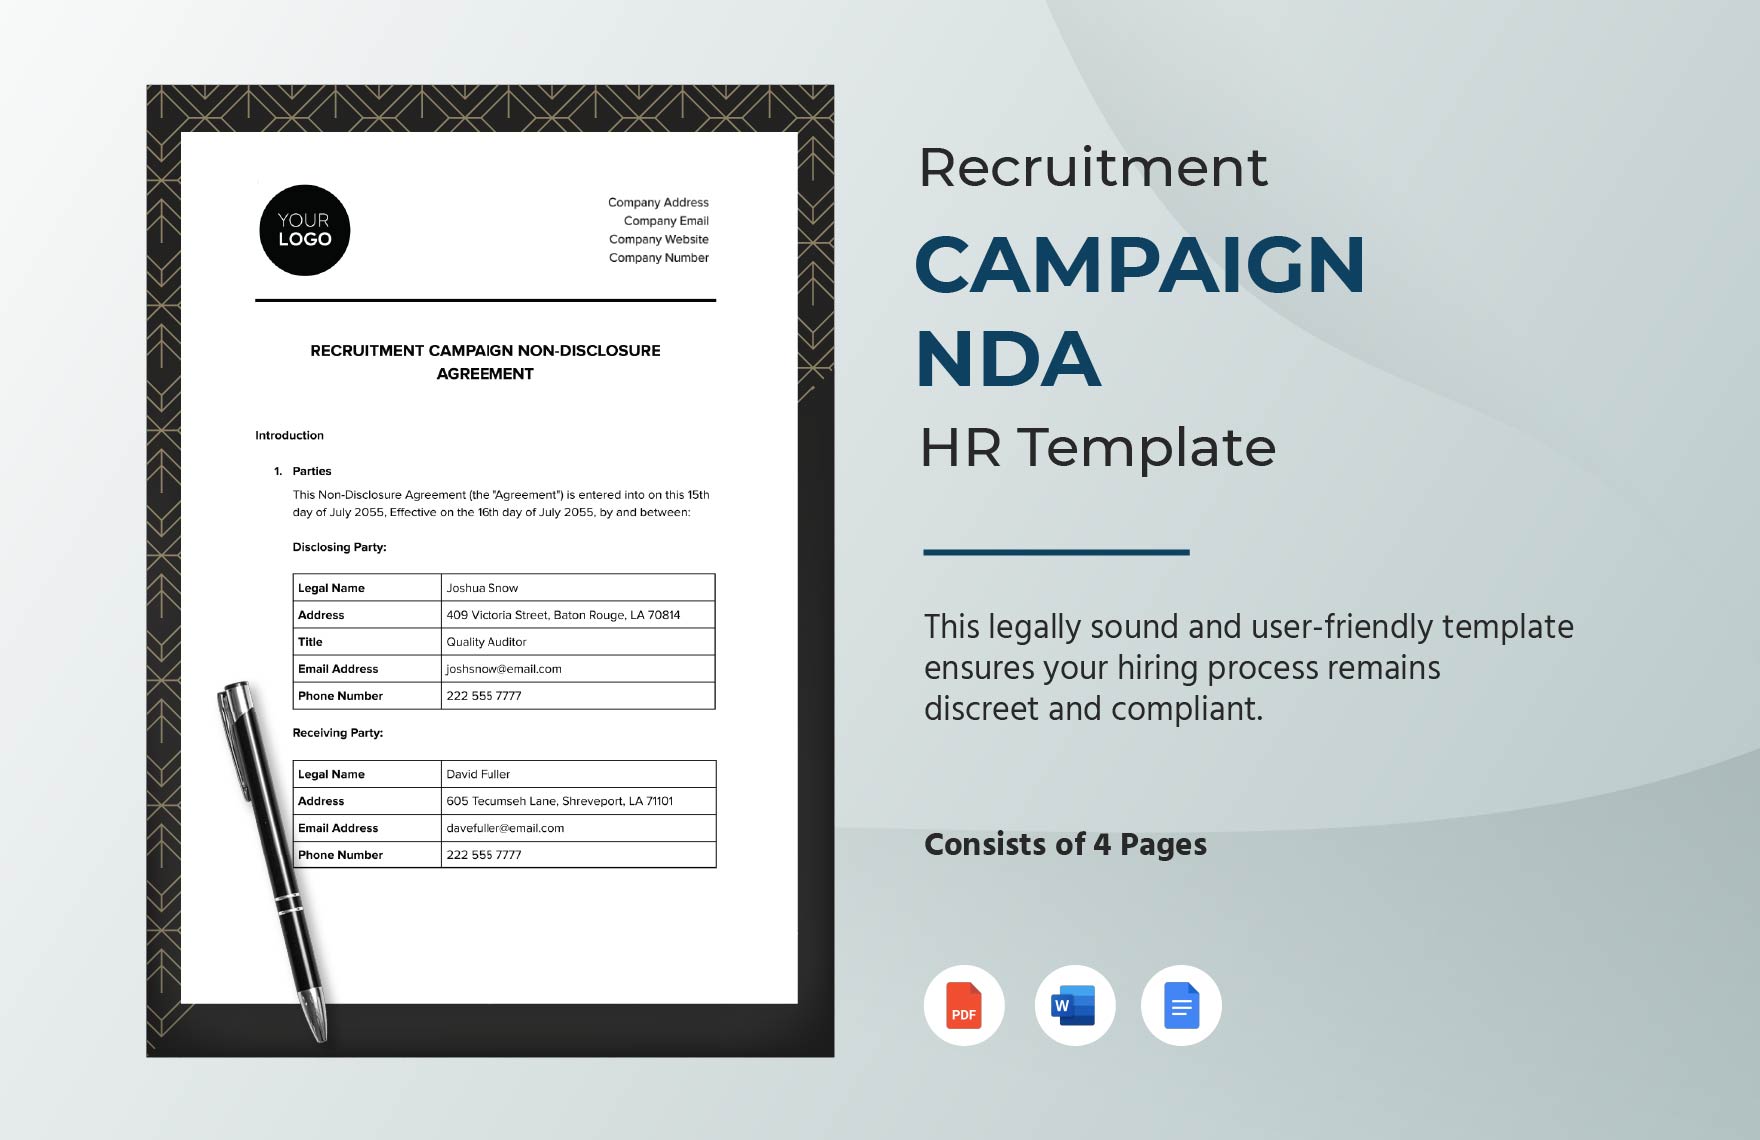 Recruitment Campaign NDA HR Template